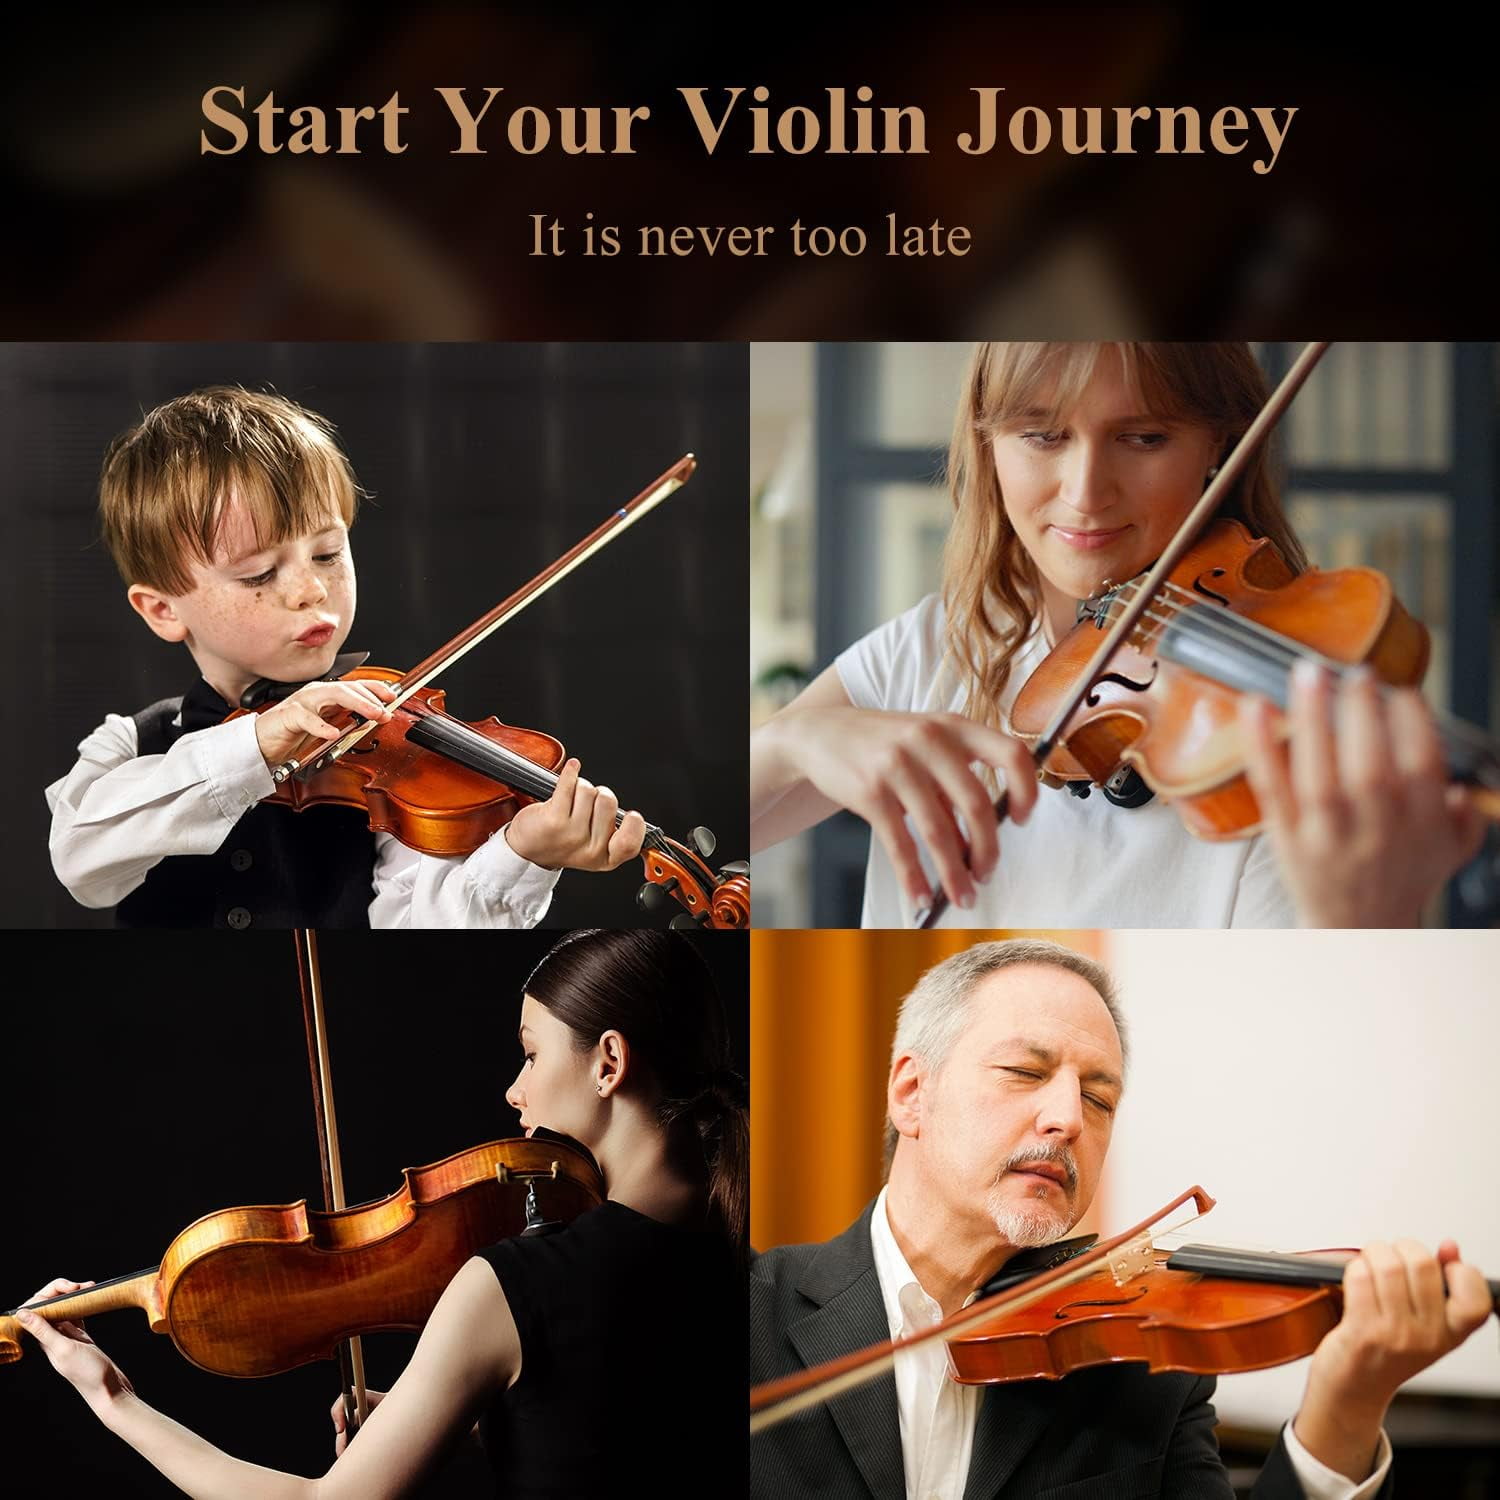 Eastar Violon 4/4 Adulte Violon pour Enfant et Débutant Violin Archet et  Colophane Jeu de Cordes Epaulière(EVA-3)